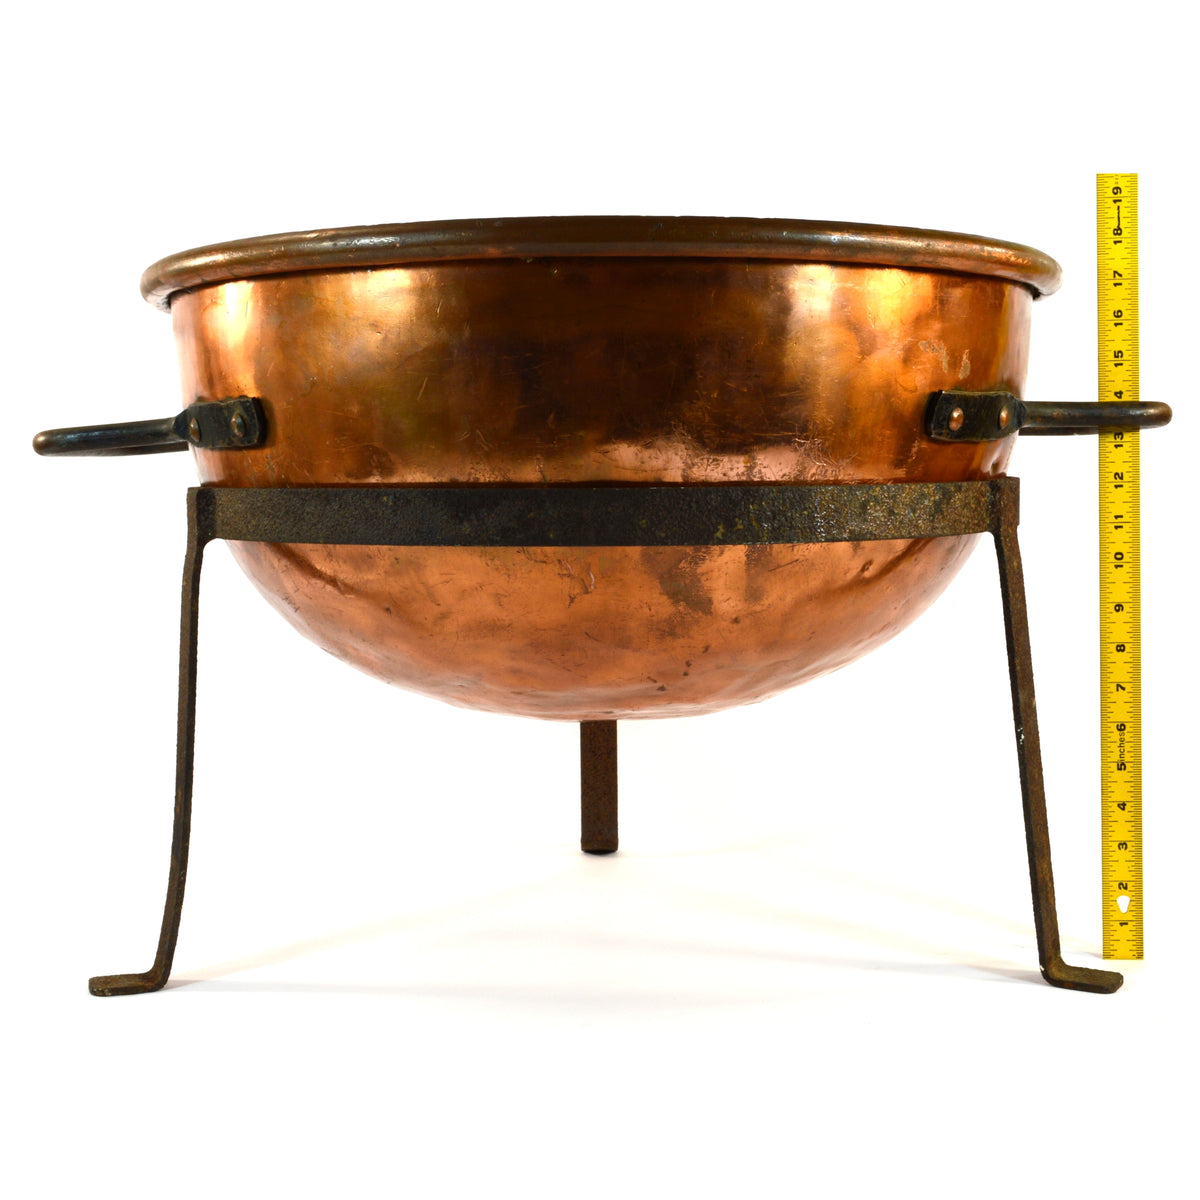 Antique Copper Pot Cauldron, Vintage Copper Kettle, Candy Making